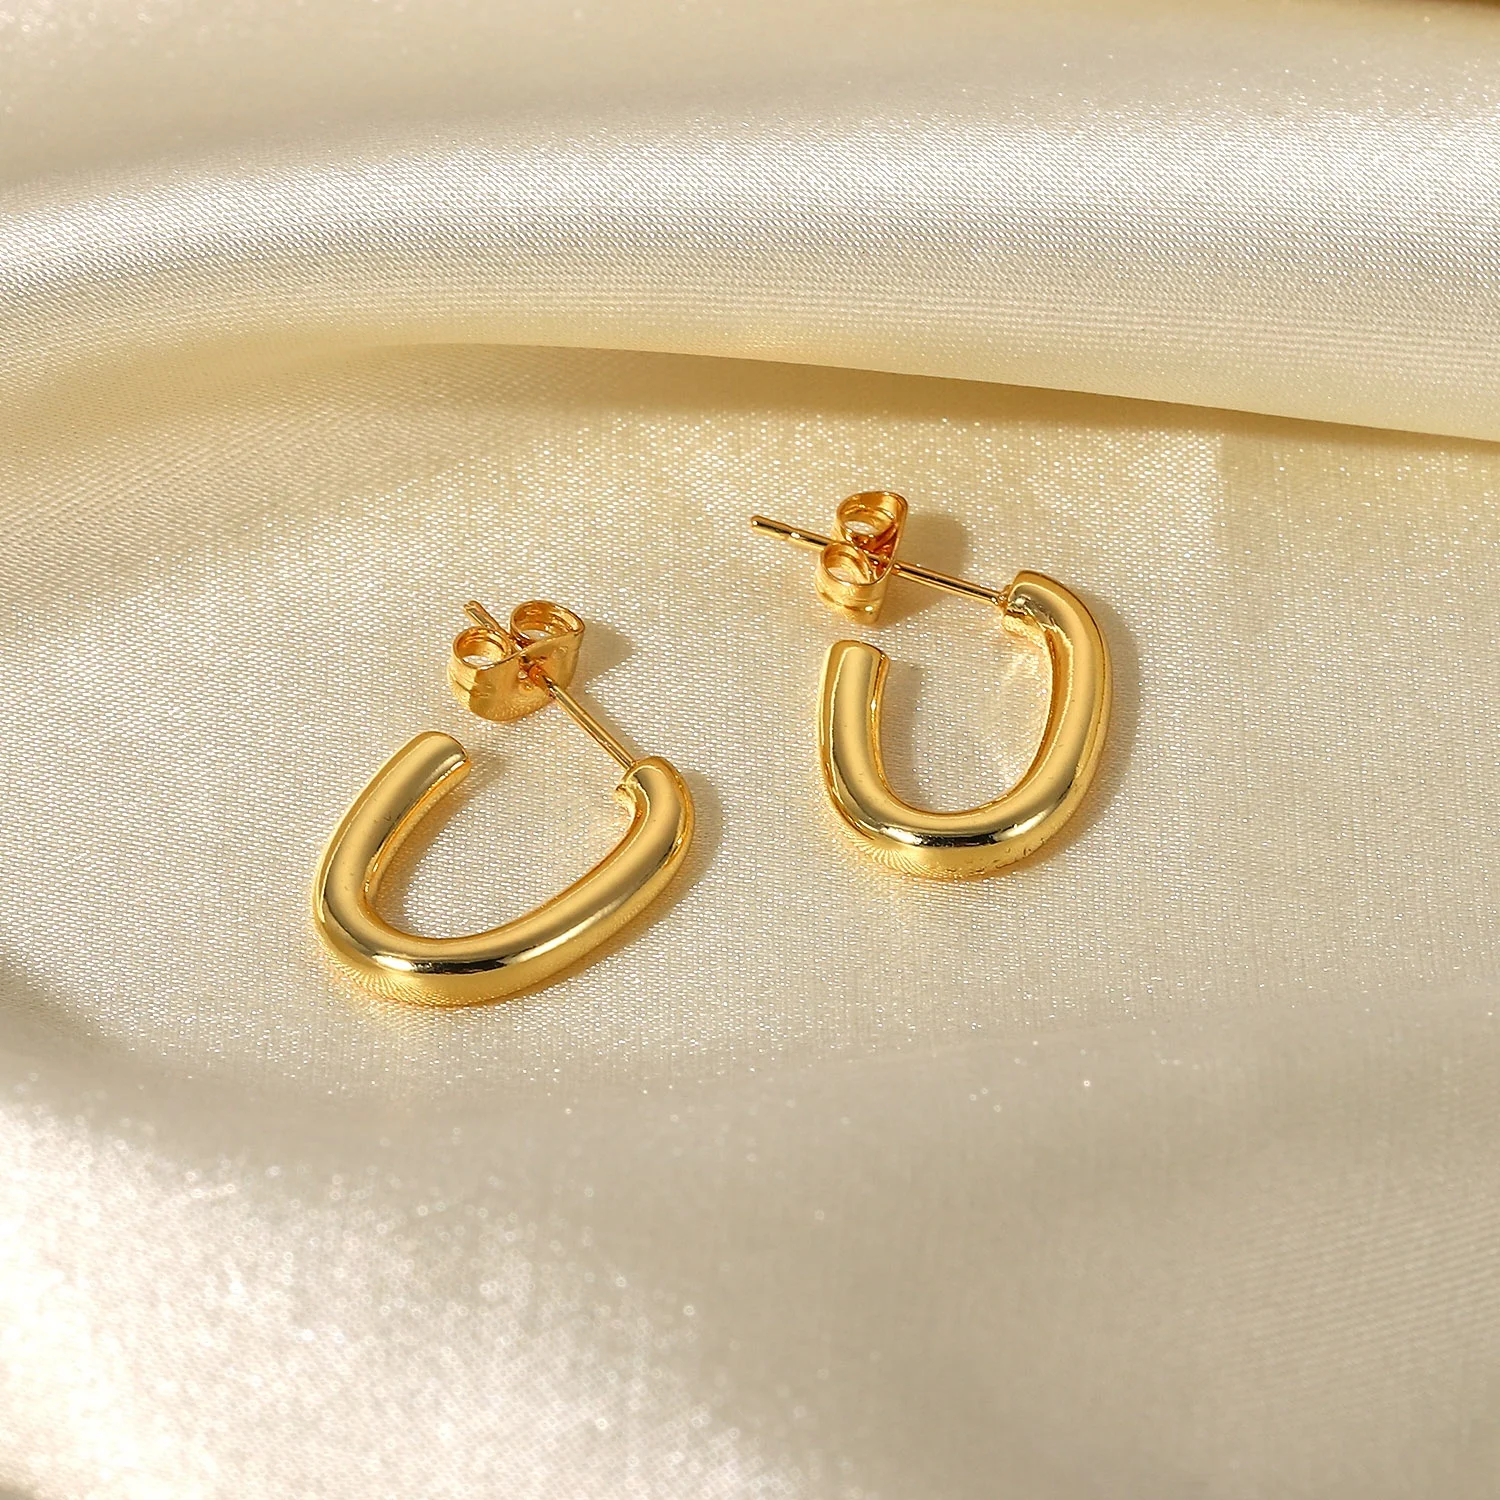 

18K PVD Gold Plated Oval Shape Hoop Earrings Jewelry Gift Stainless Steel CC Shape Hoop Earring